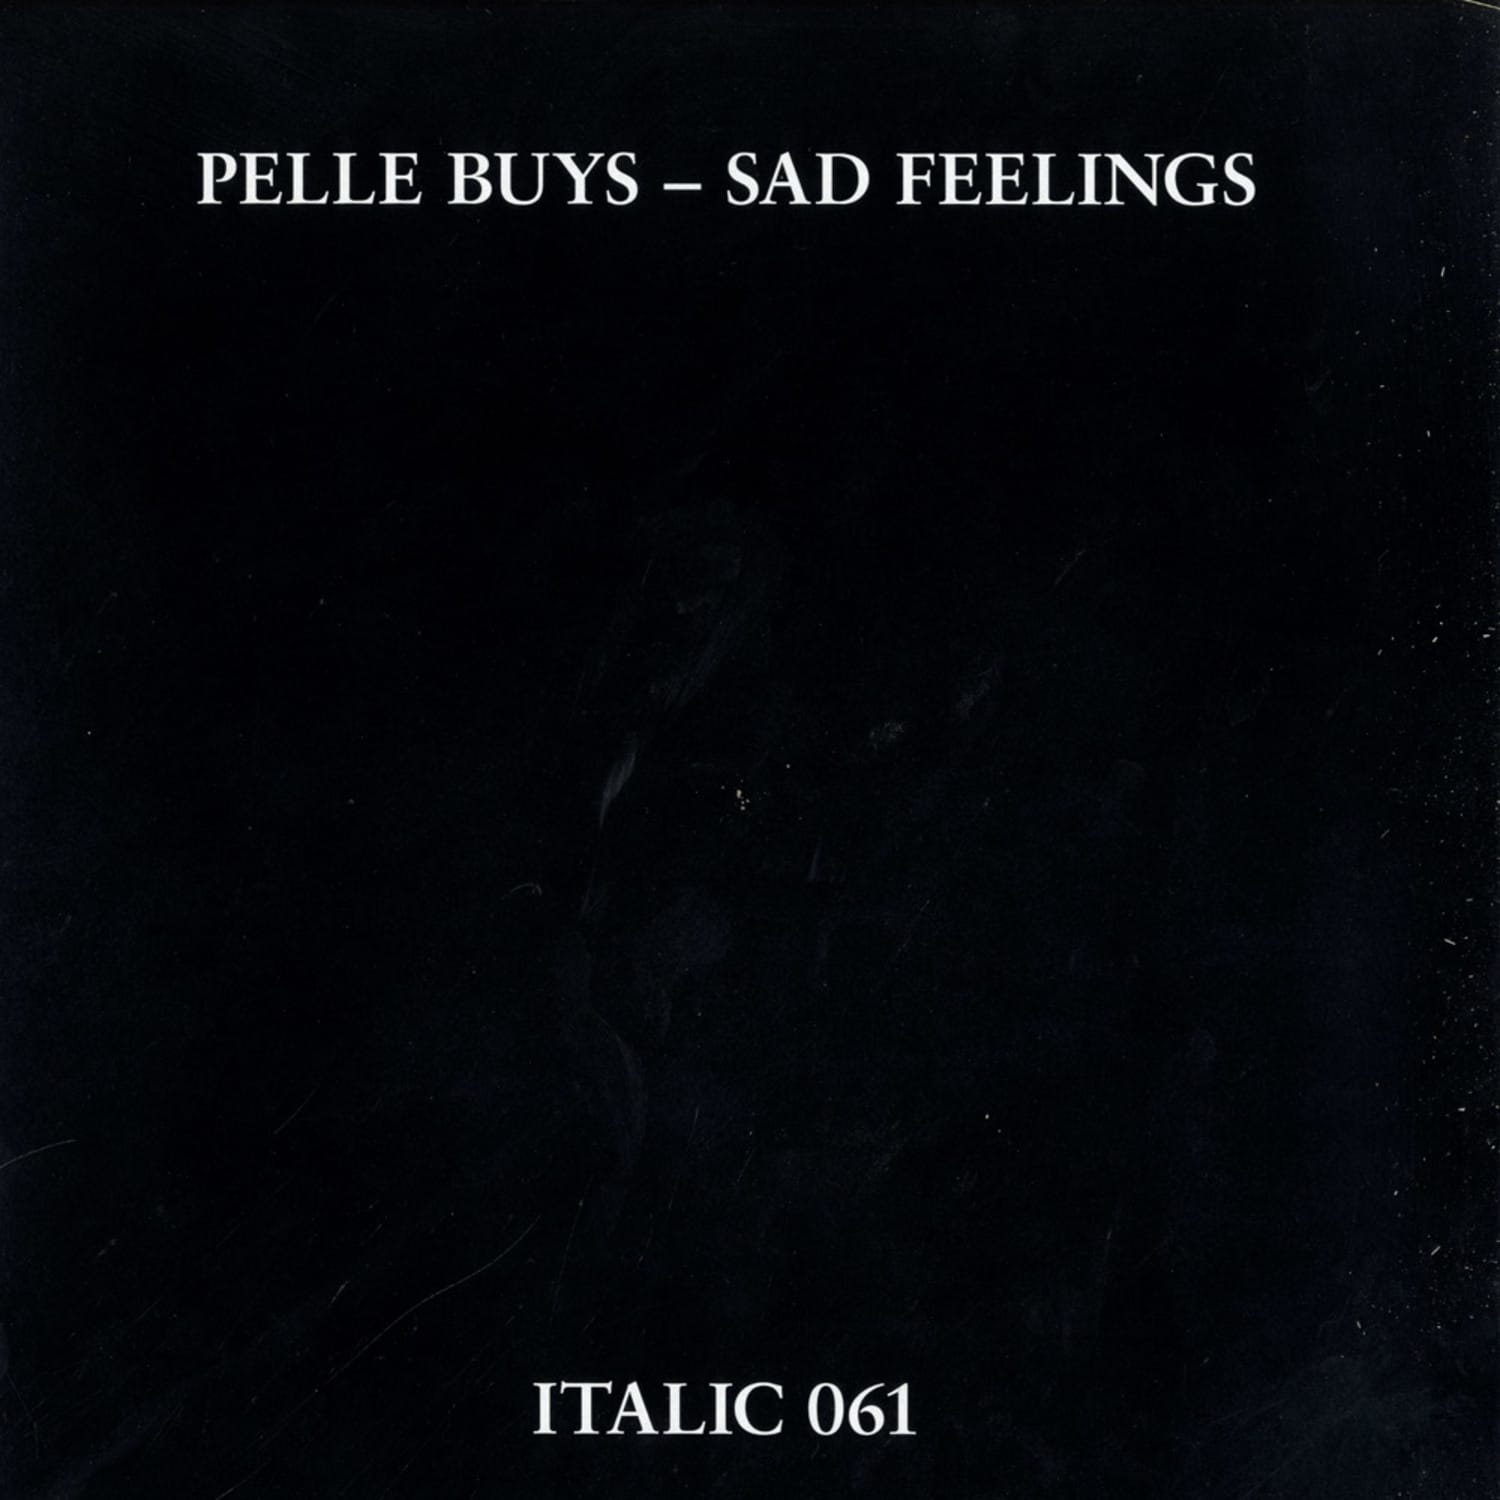 Pelle Buys - SAD FEELINGS / ANTAGONISM